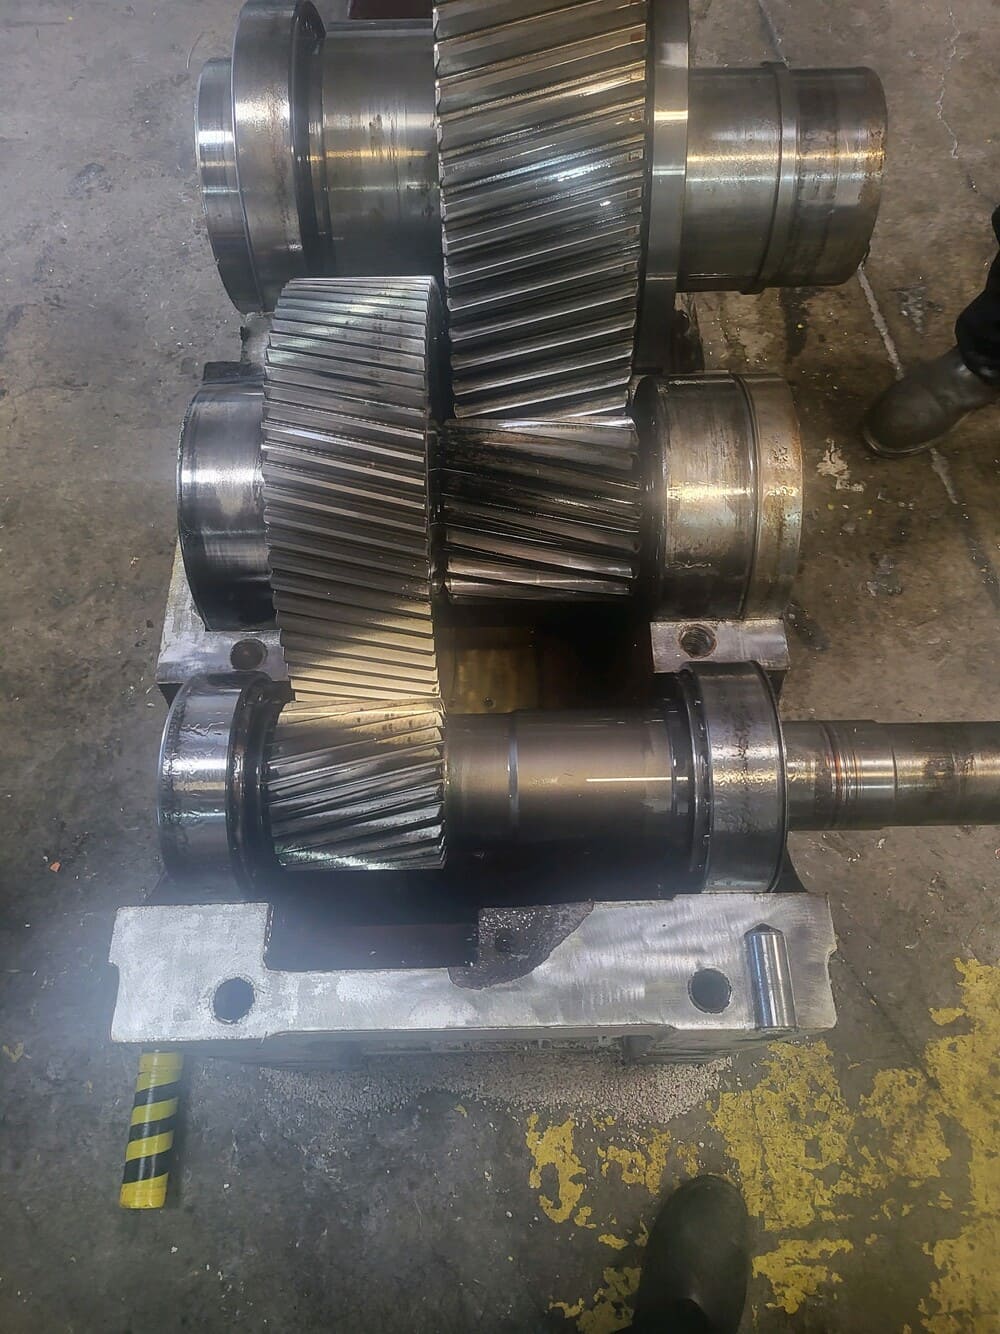 multiple gears